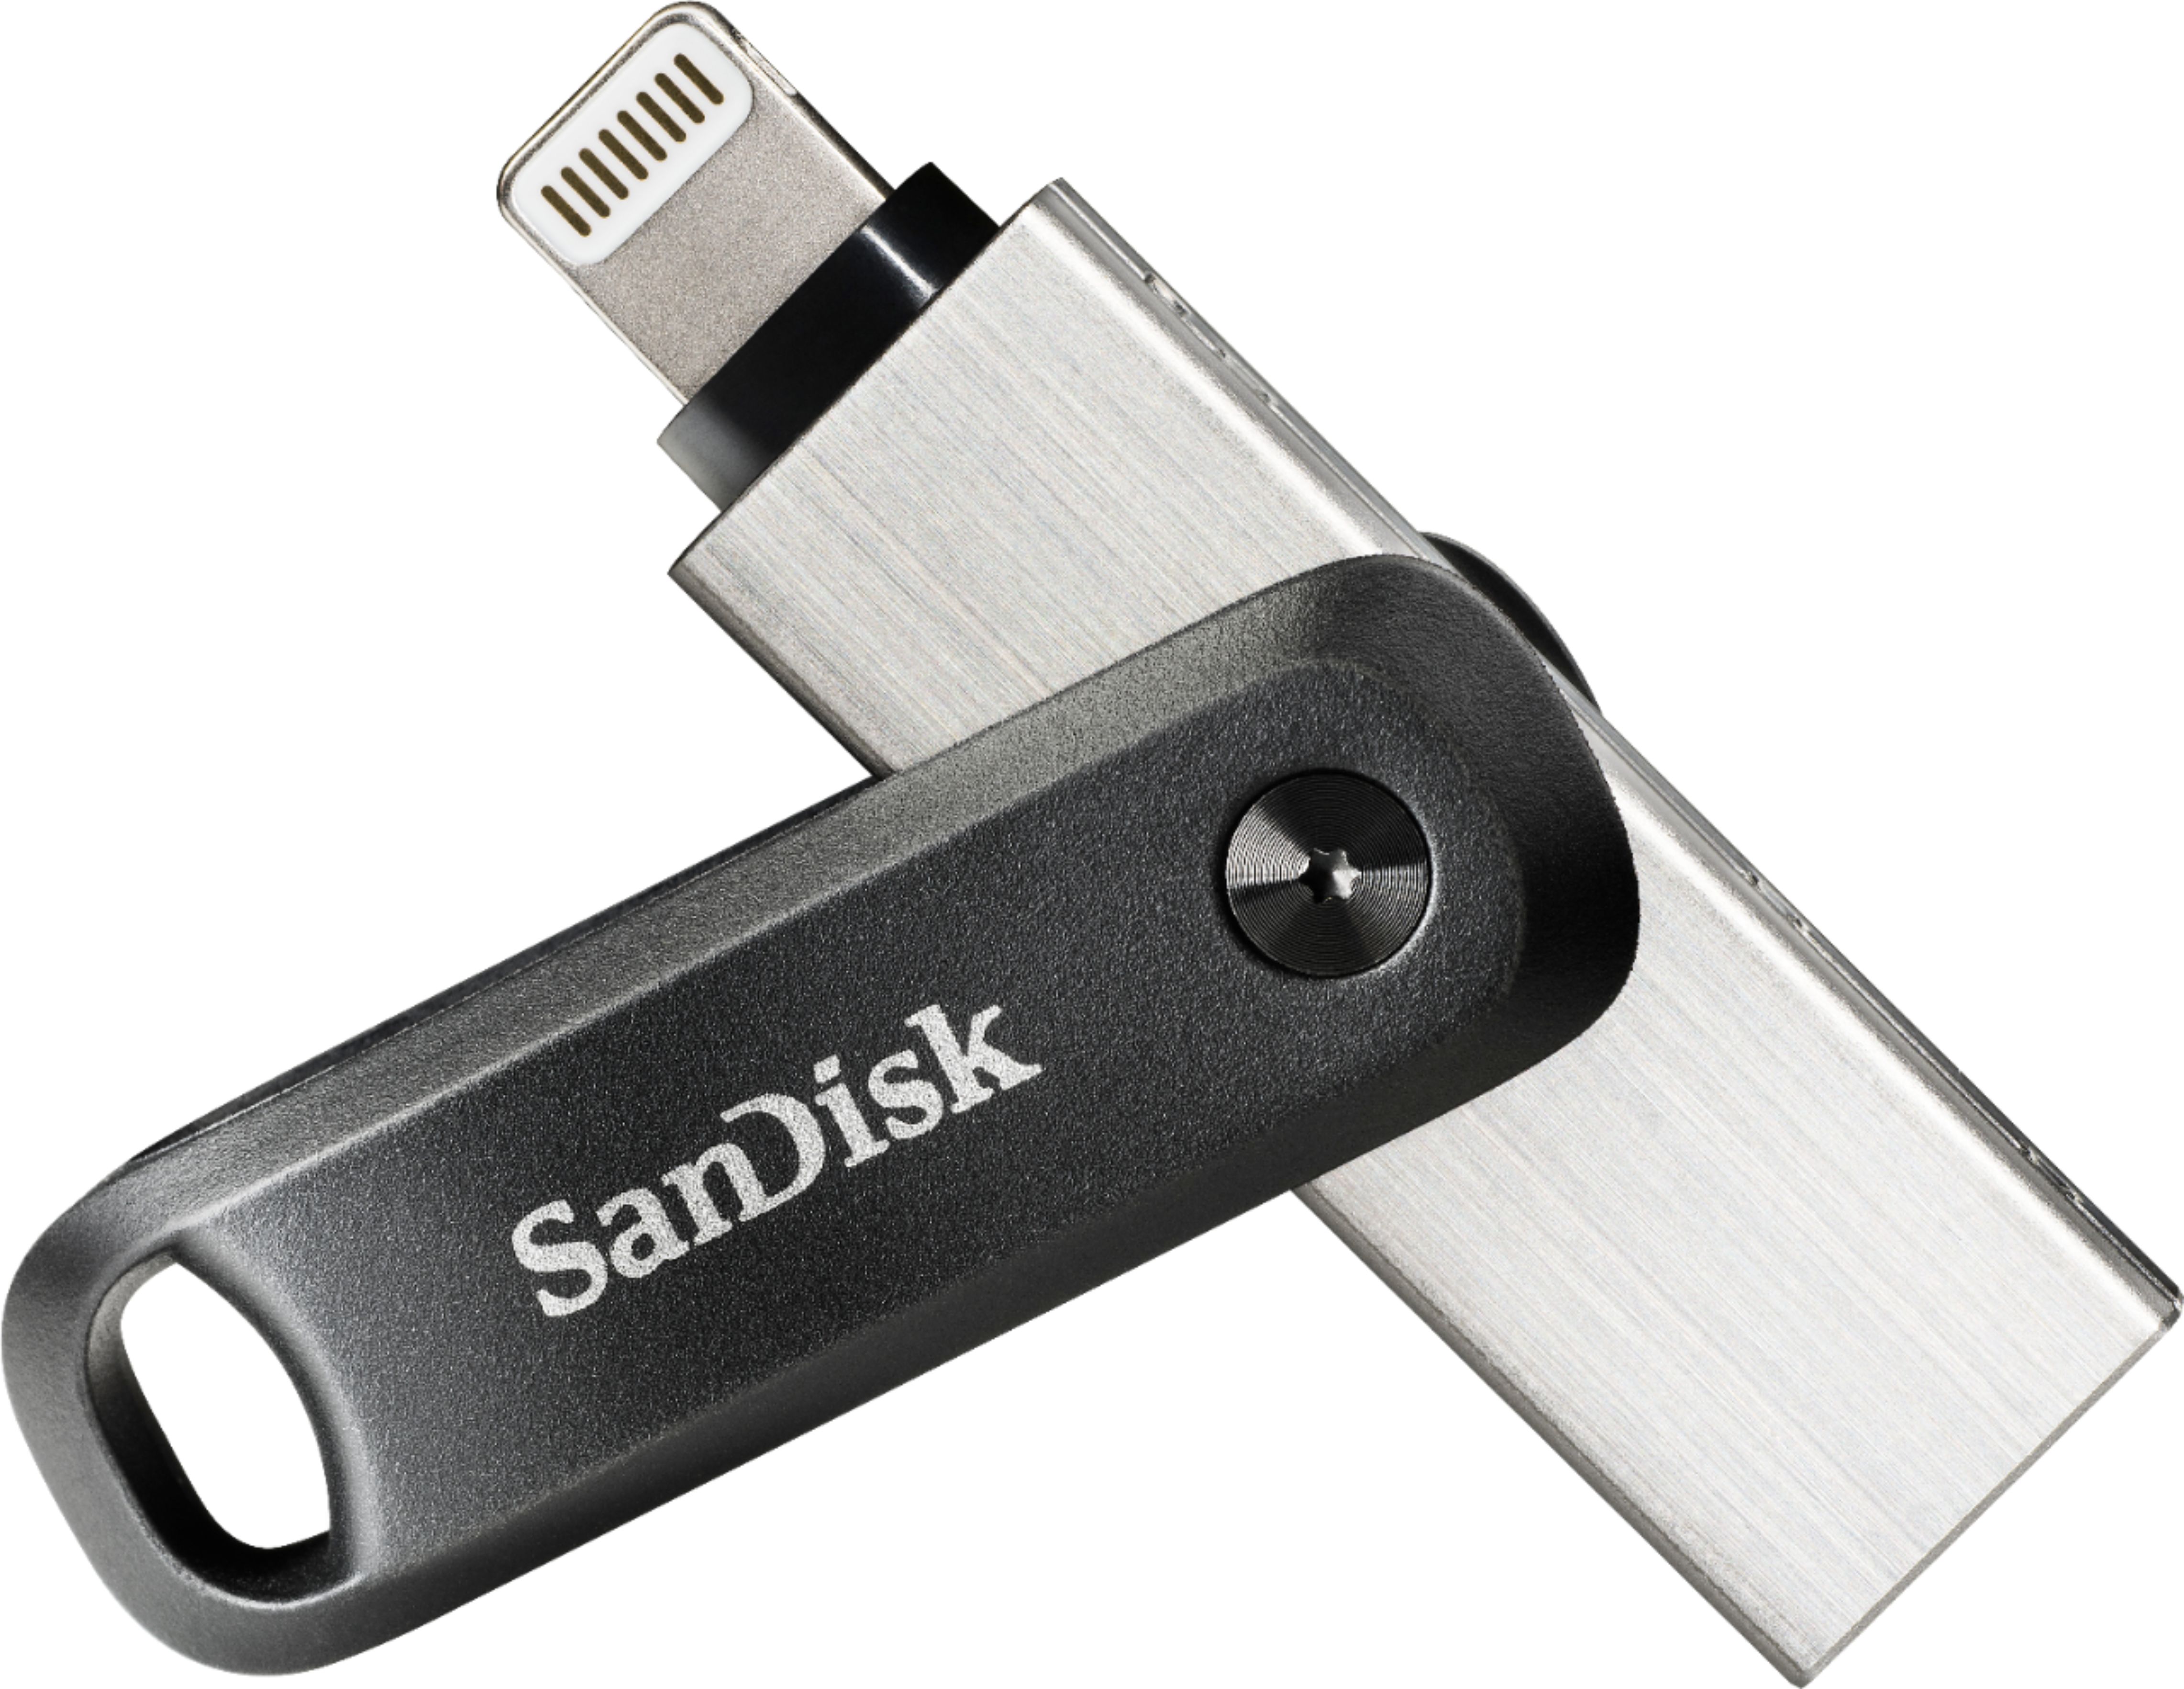 64GB USB Flash Drive Memory Stick K&ZZ Thumb Drive Gigstick USB3.0 Pen Drive for Folding Digital Data Storage Zip Drive Jump Drive